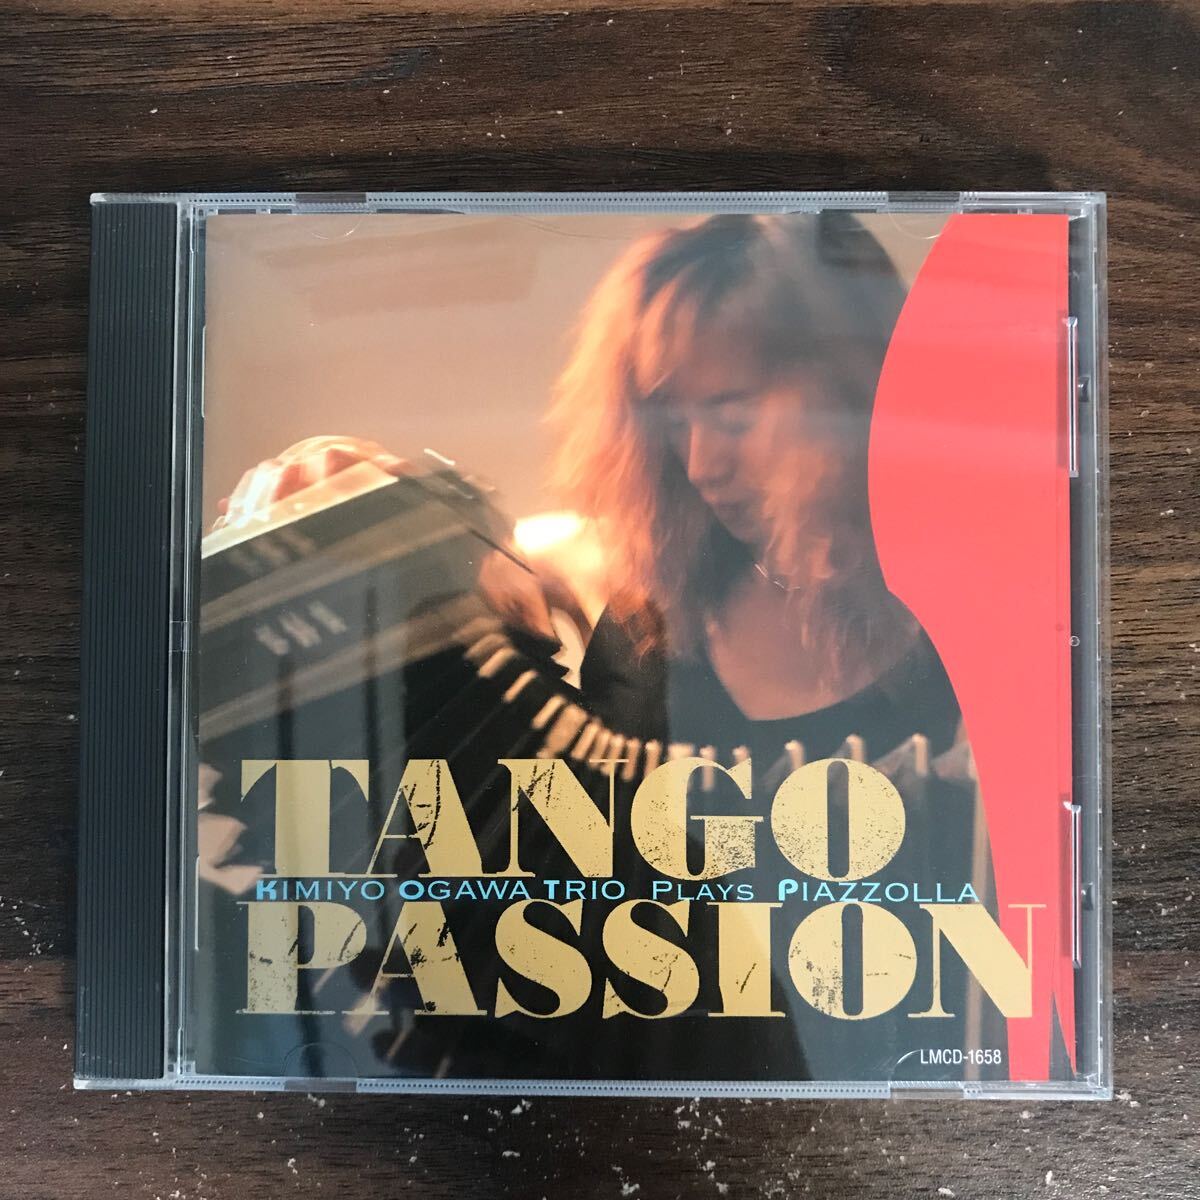 (511)中古CD100円 Kimiyo Ogawa Trio Plays Piazzolla TANGO PASSION_画像1